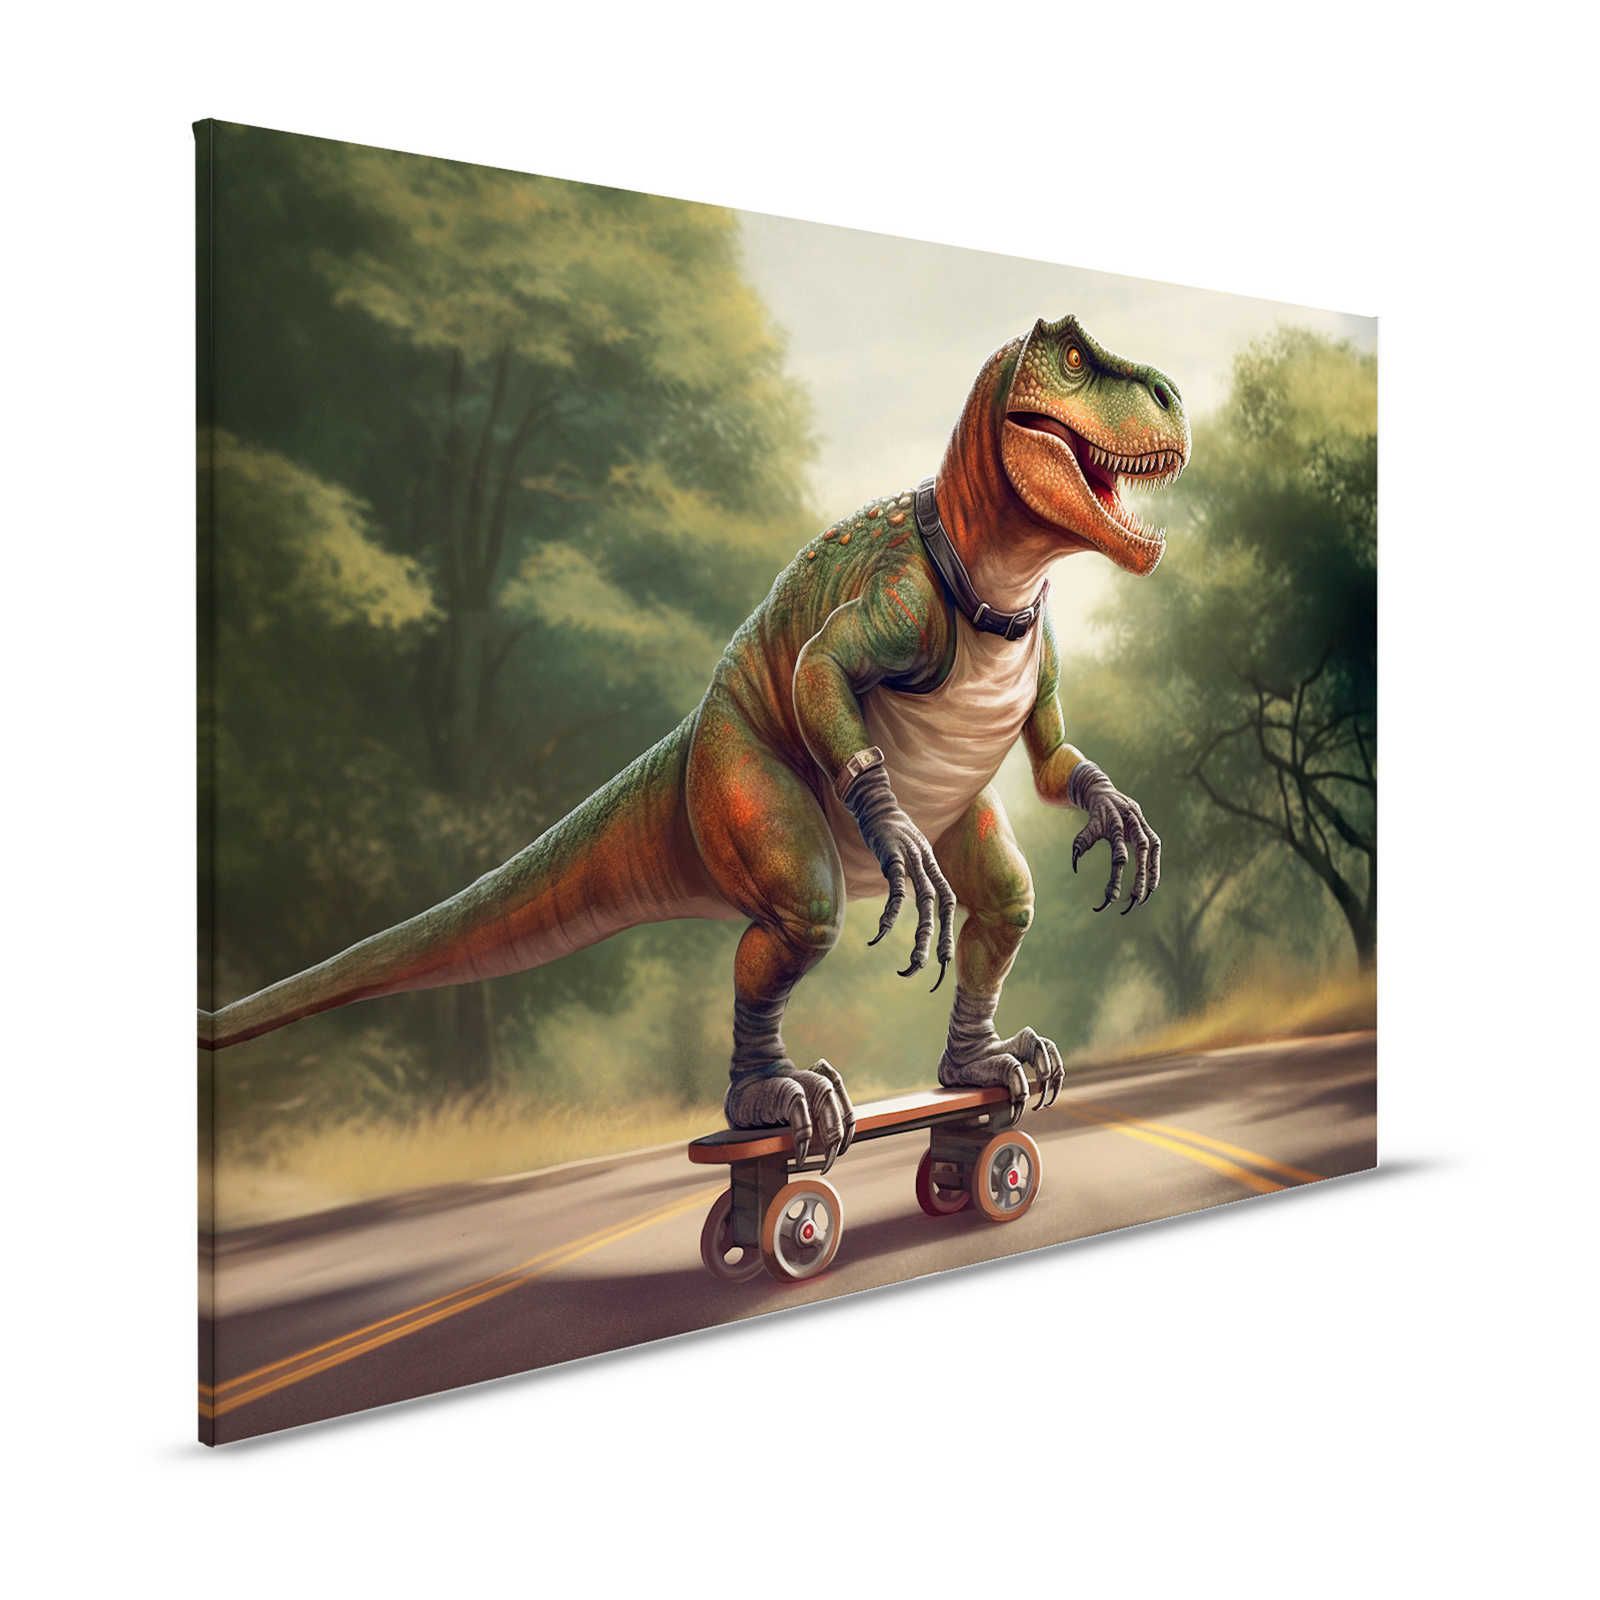 KI Pintura en lienzo »skating t-rex«< - 120 cm x 80 cm
